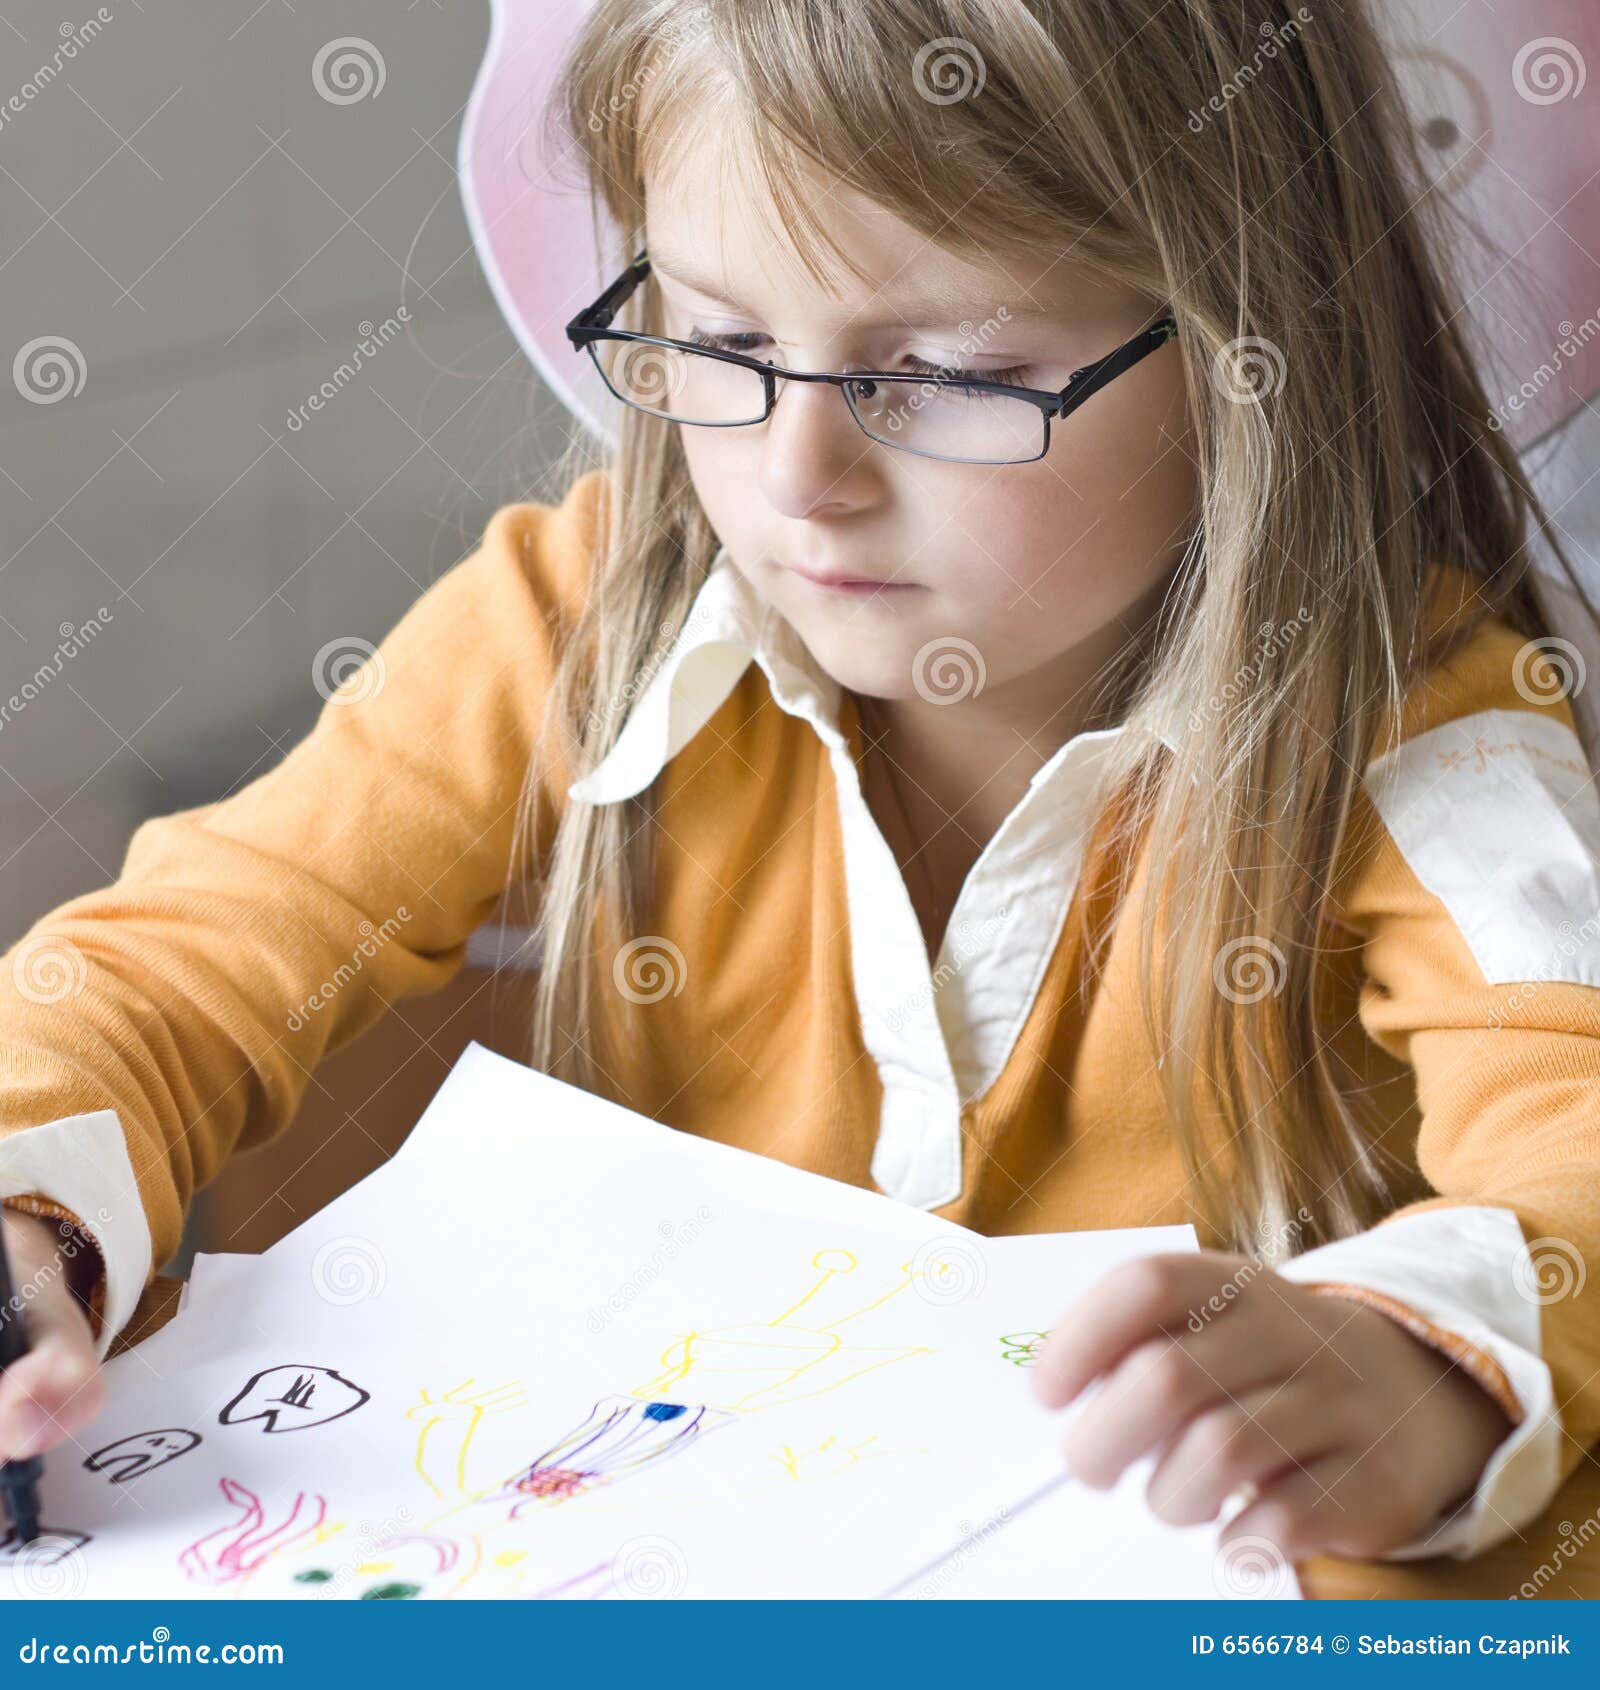 girl drawing at home